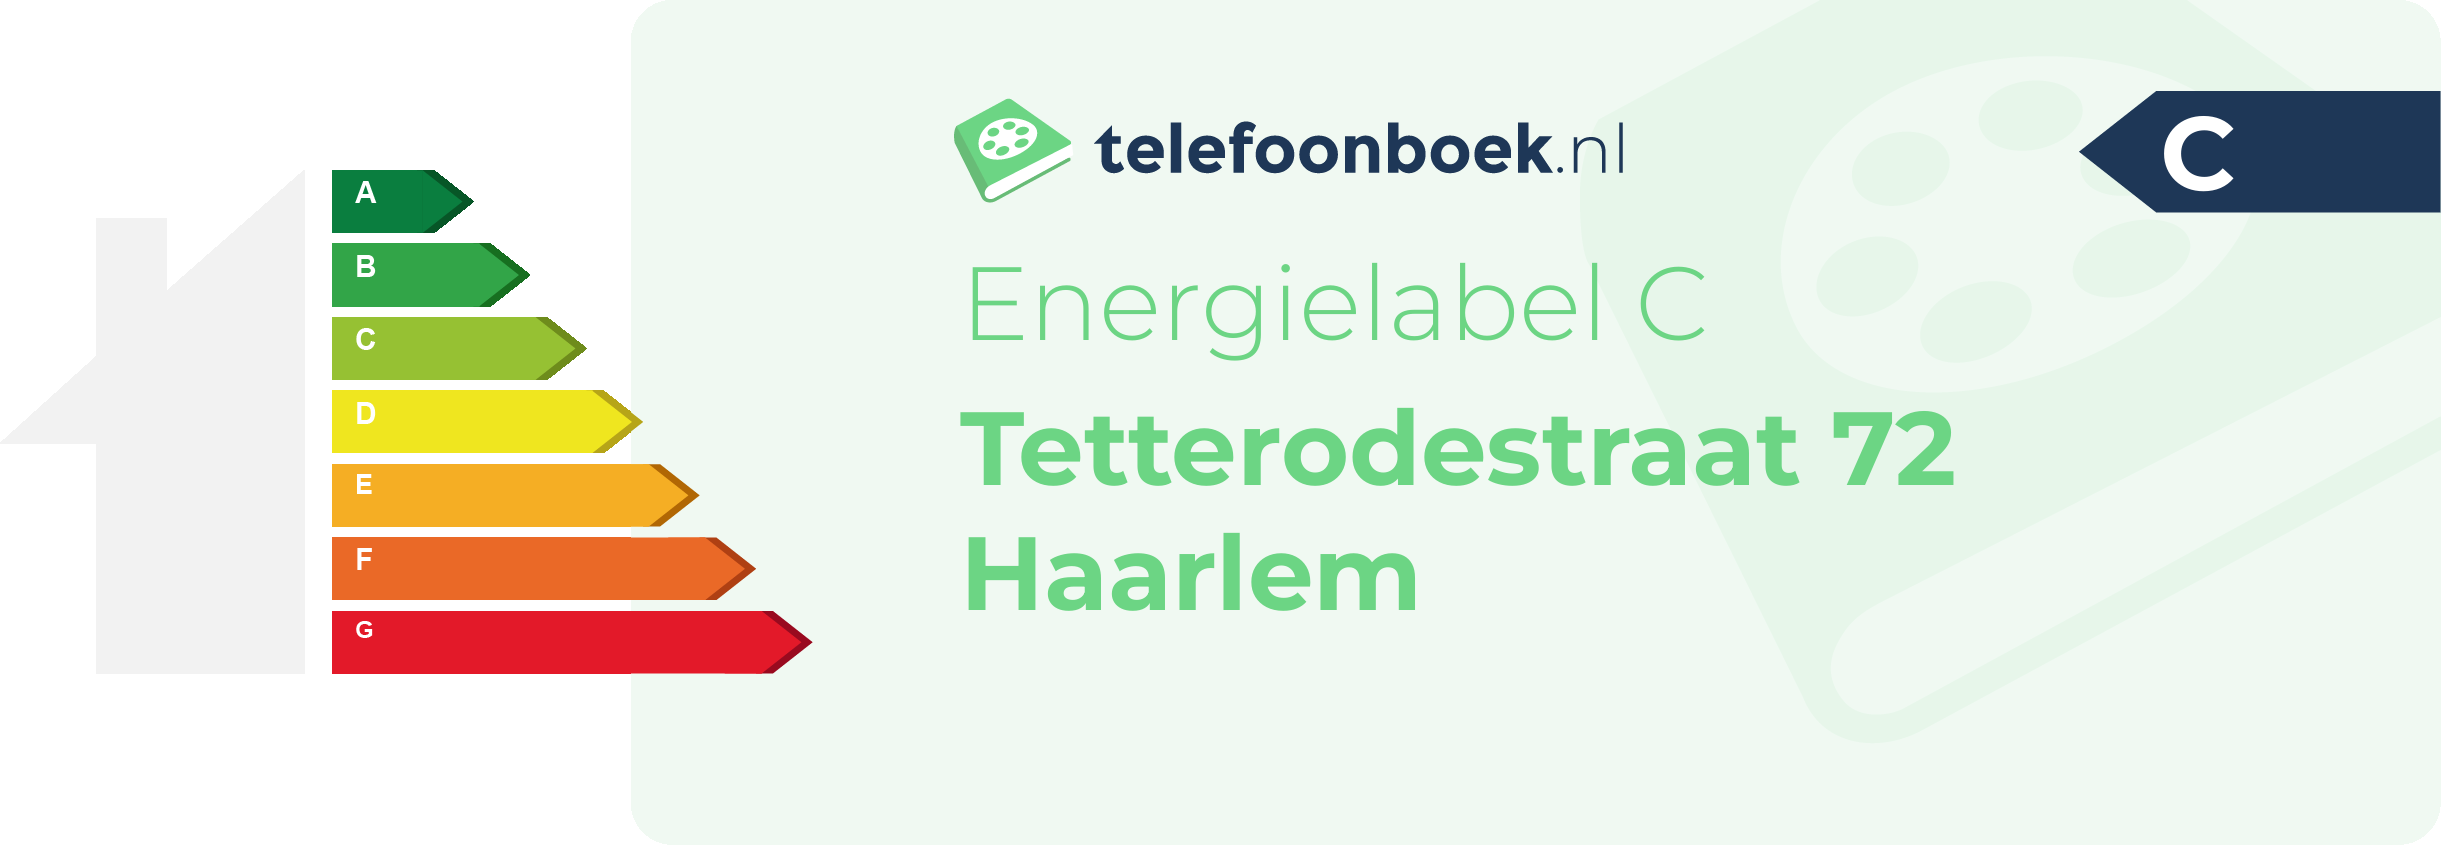 Energielabel Tetterodestraat 72 Haarlem